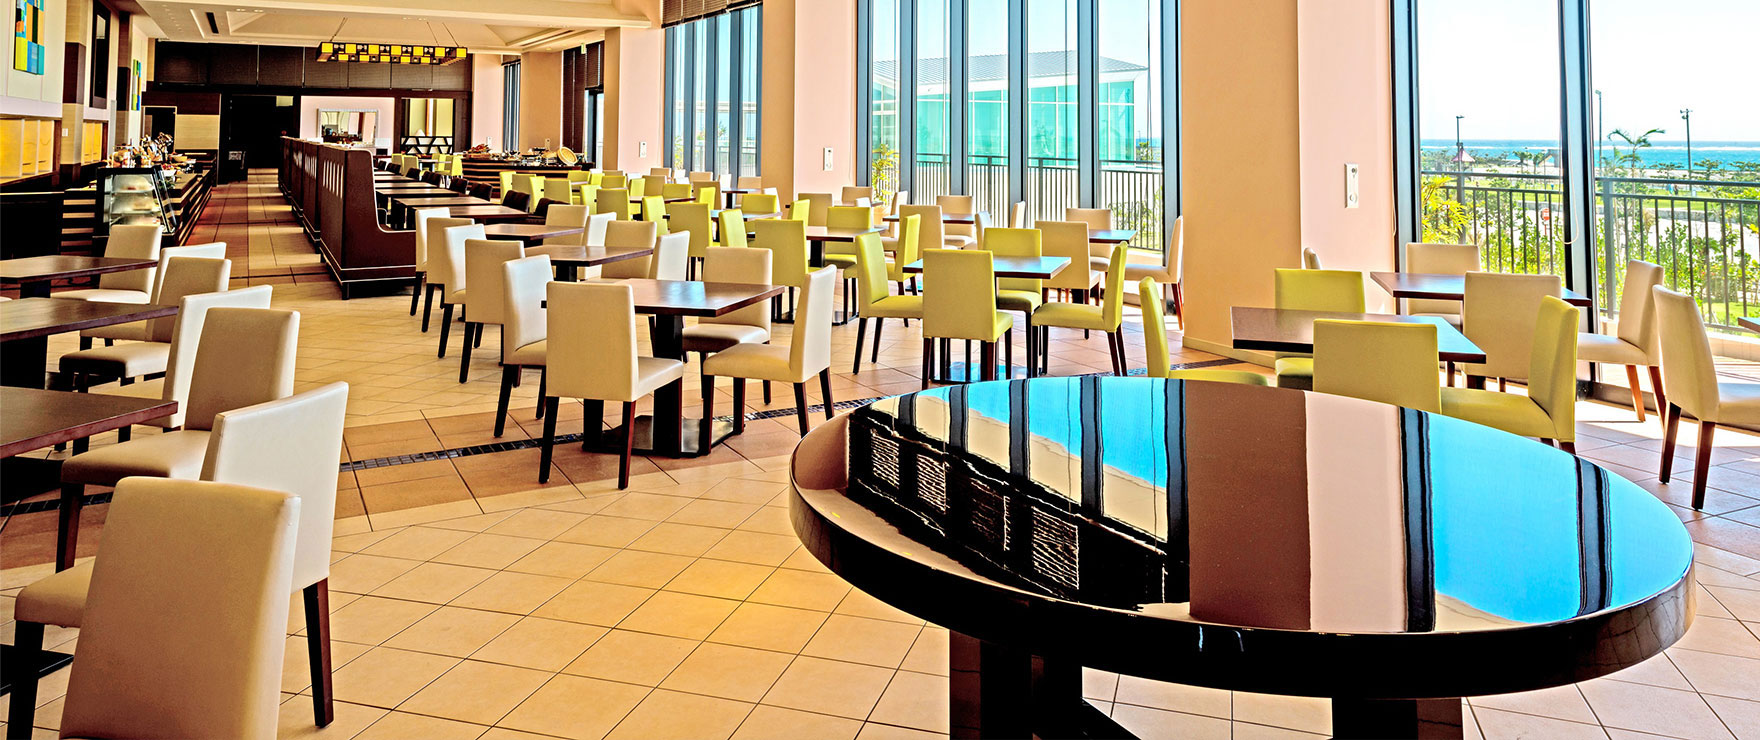 Ocean View Restaurant, “REIR”